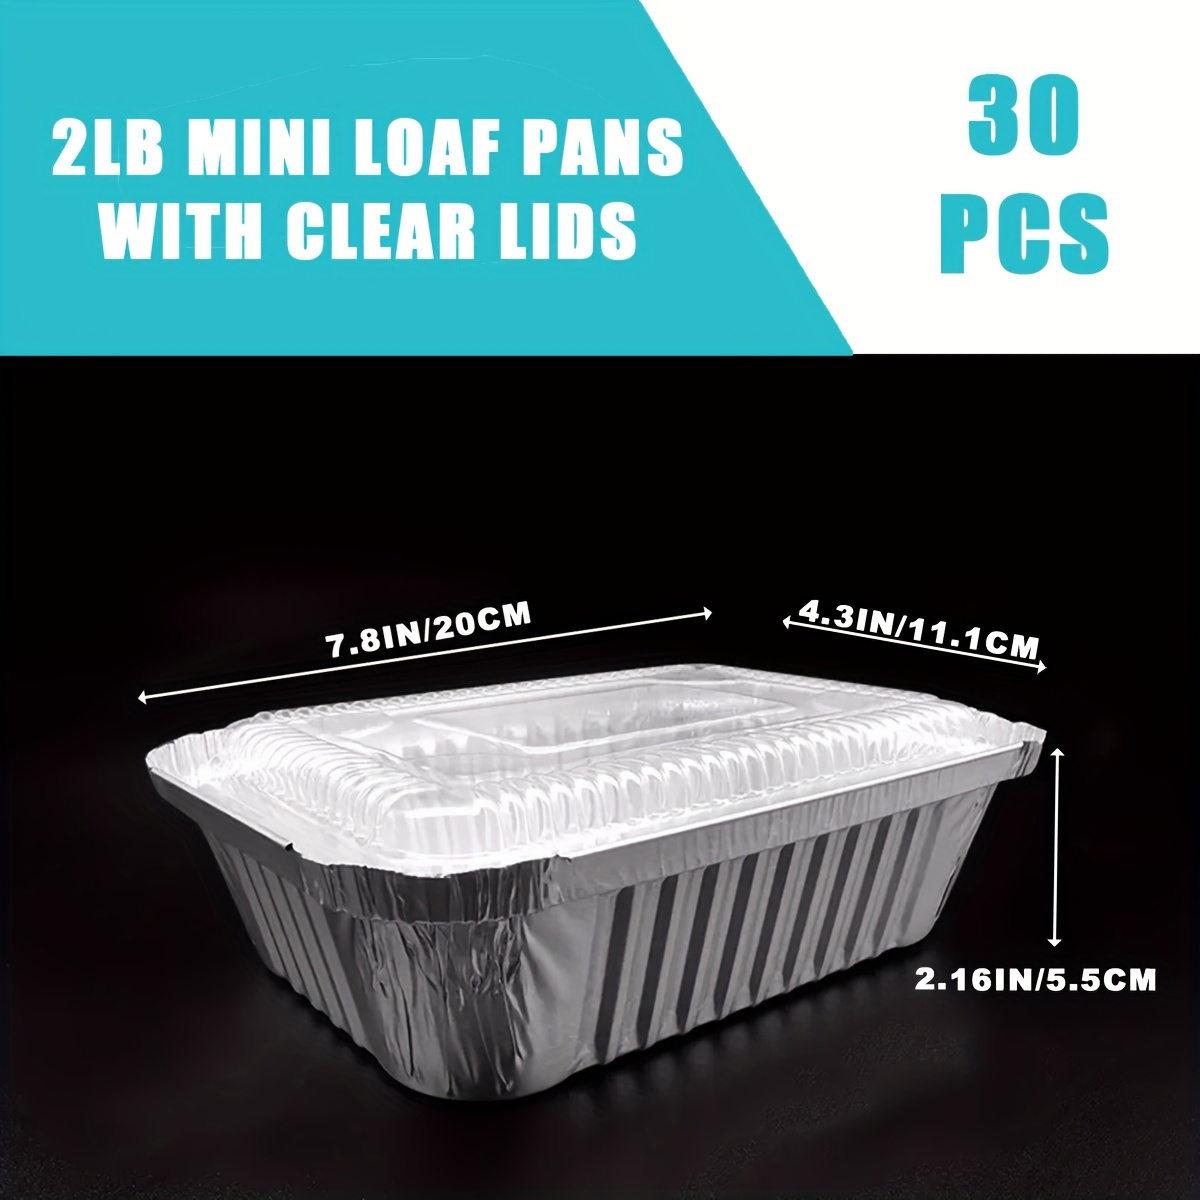 Aluminum Small 1 lb Loaf Pan